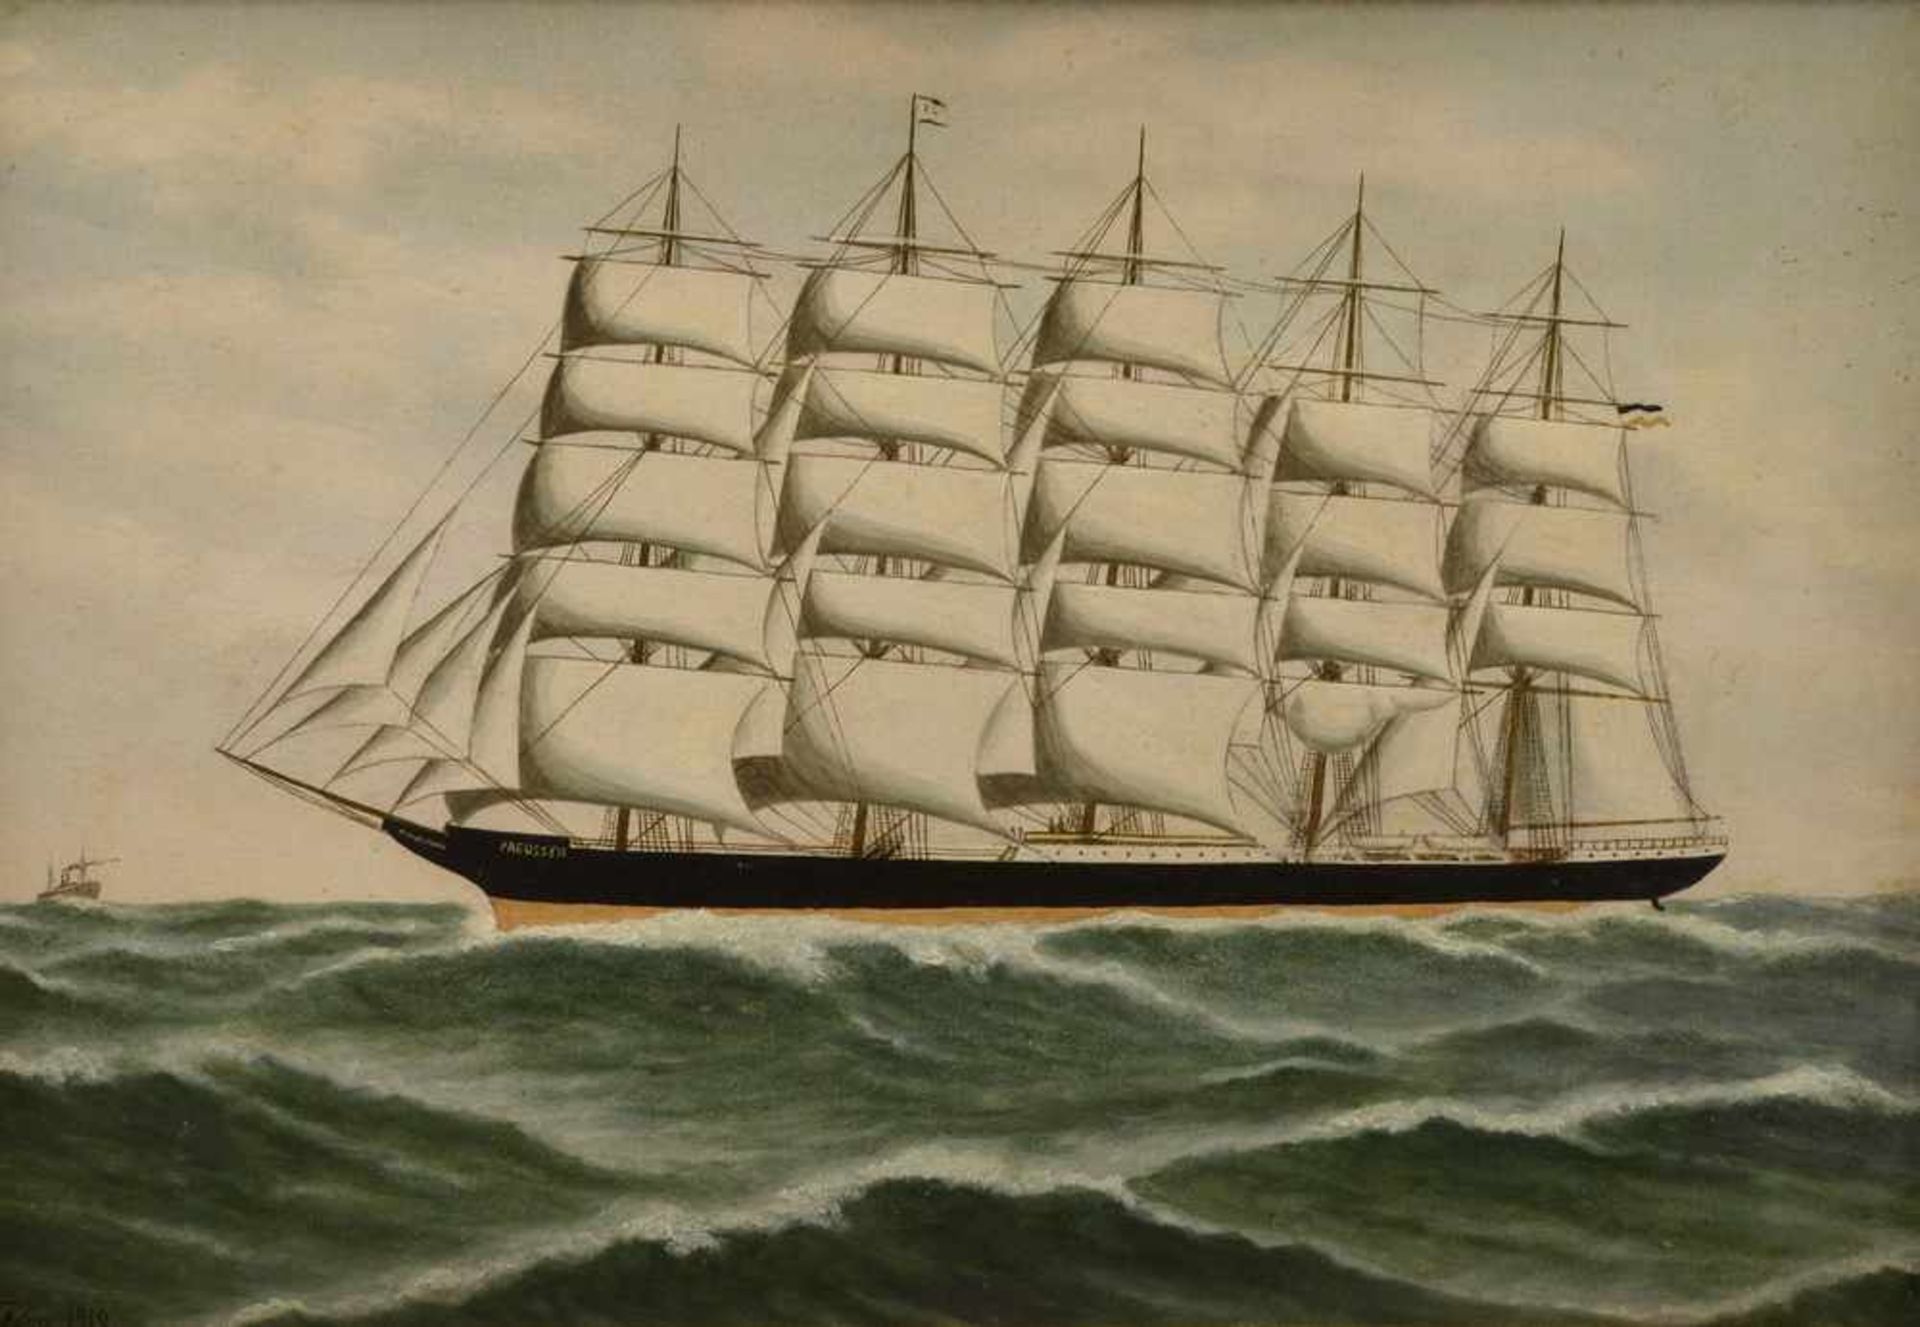 Arnesen, Vilhelm (1865-1945) "Fünfmast-Vollschiff Preussen, 1902 auf der Werft Johann C. Tecklenburg